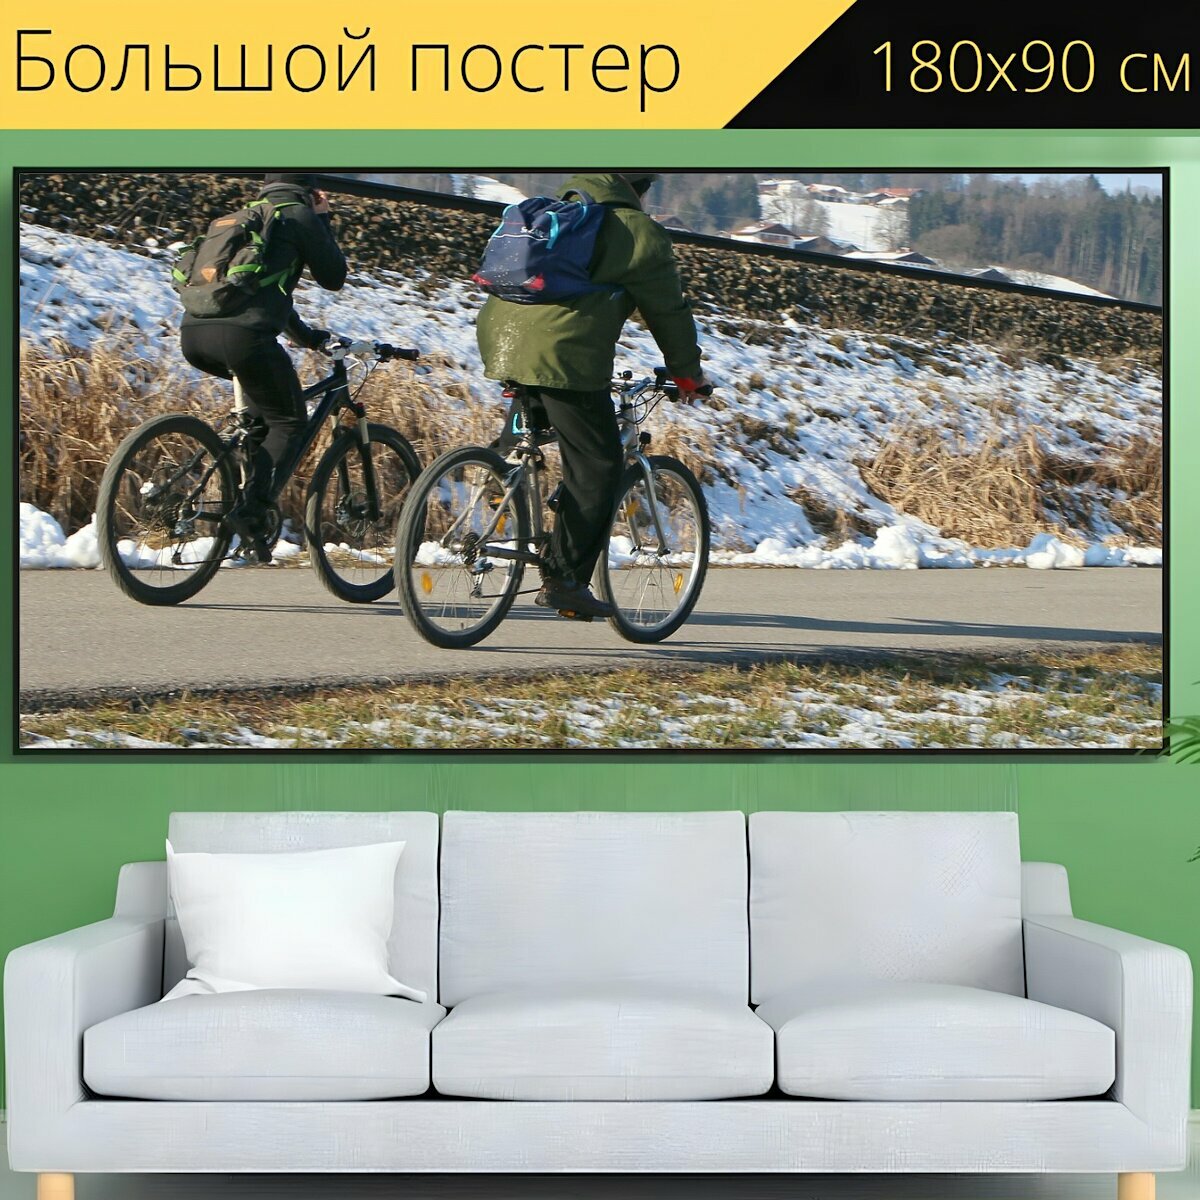 Большой постер "Колесо, кататься на велосипеде, велосипед" 180 x 90 см. для интерьера